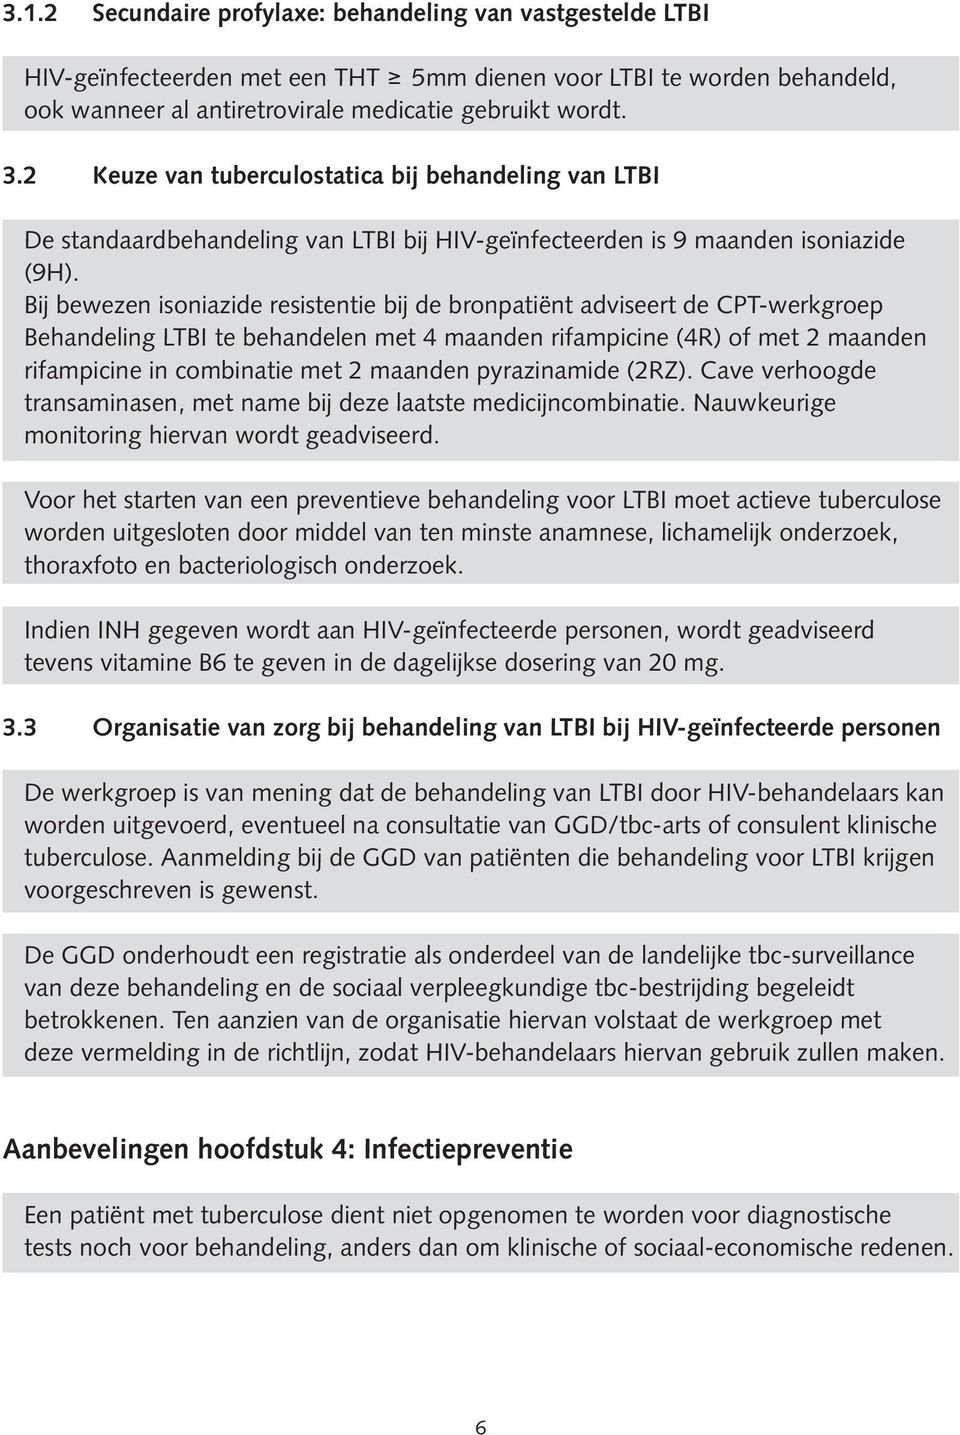 Bij bewezen isoniazide resistentie bij de bronpatiënt adviseert de CPT-werkgroep Behandeling LTBI te behandelen met 4 maanden rifampicine (4R) of met 2 maanden rifampicine in combinatie met 2 maanden